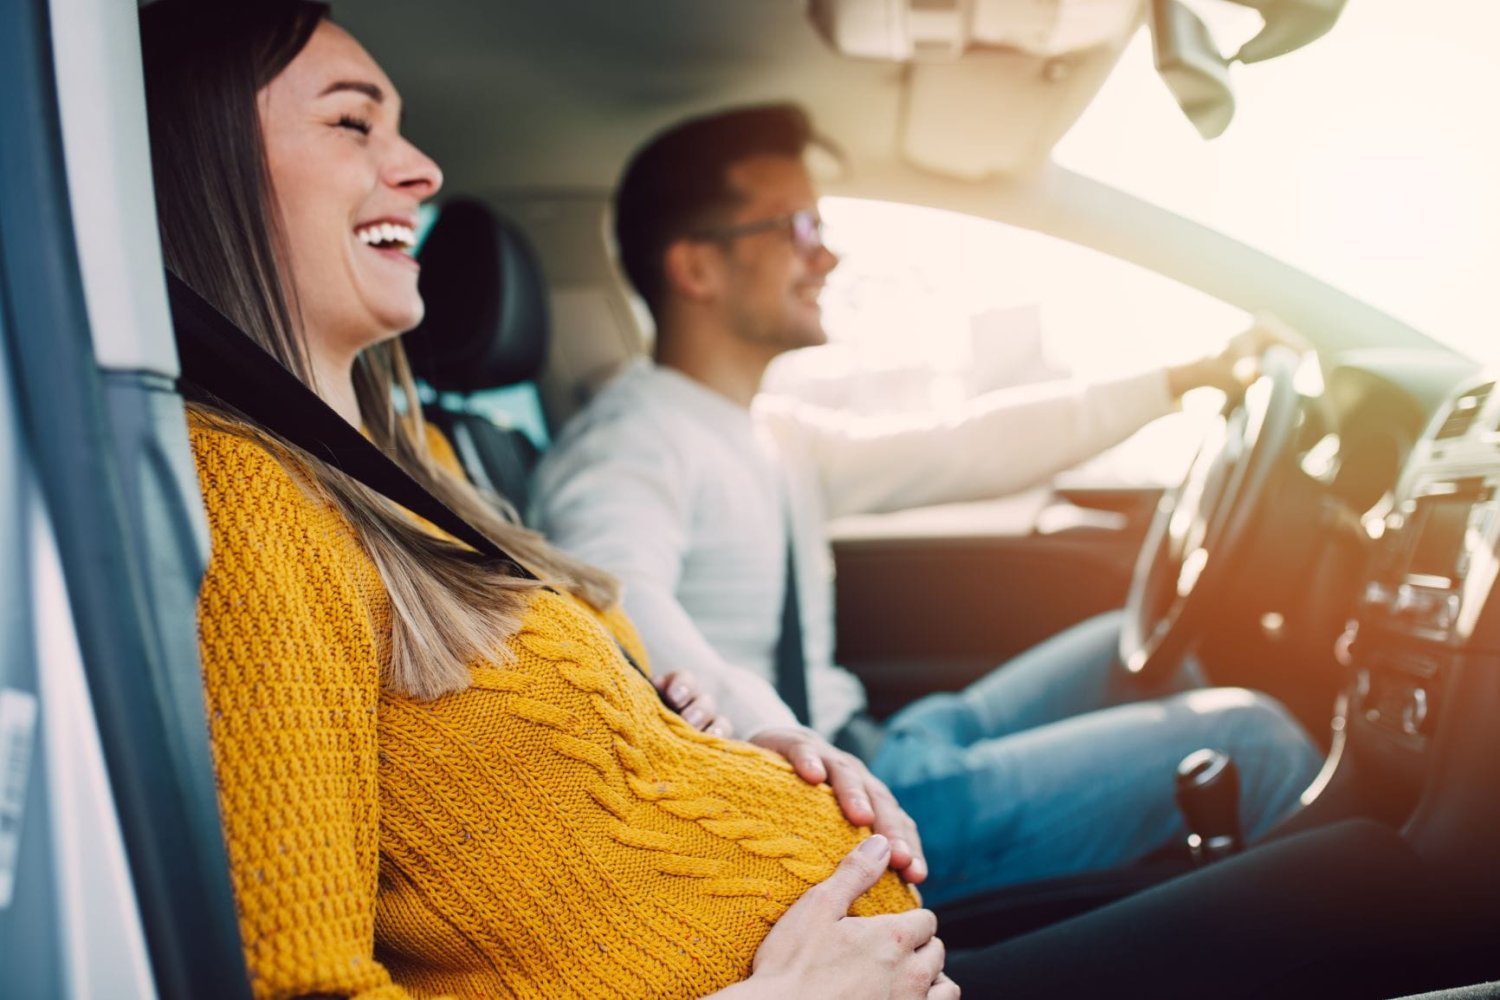 Bildet viser en gravid kvinne som sitter i bilen sammen med en mann. Hun smiler og holder seg på magen. 